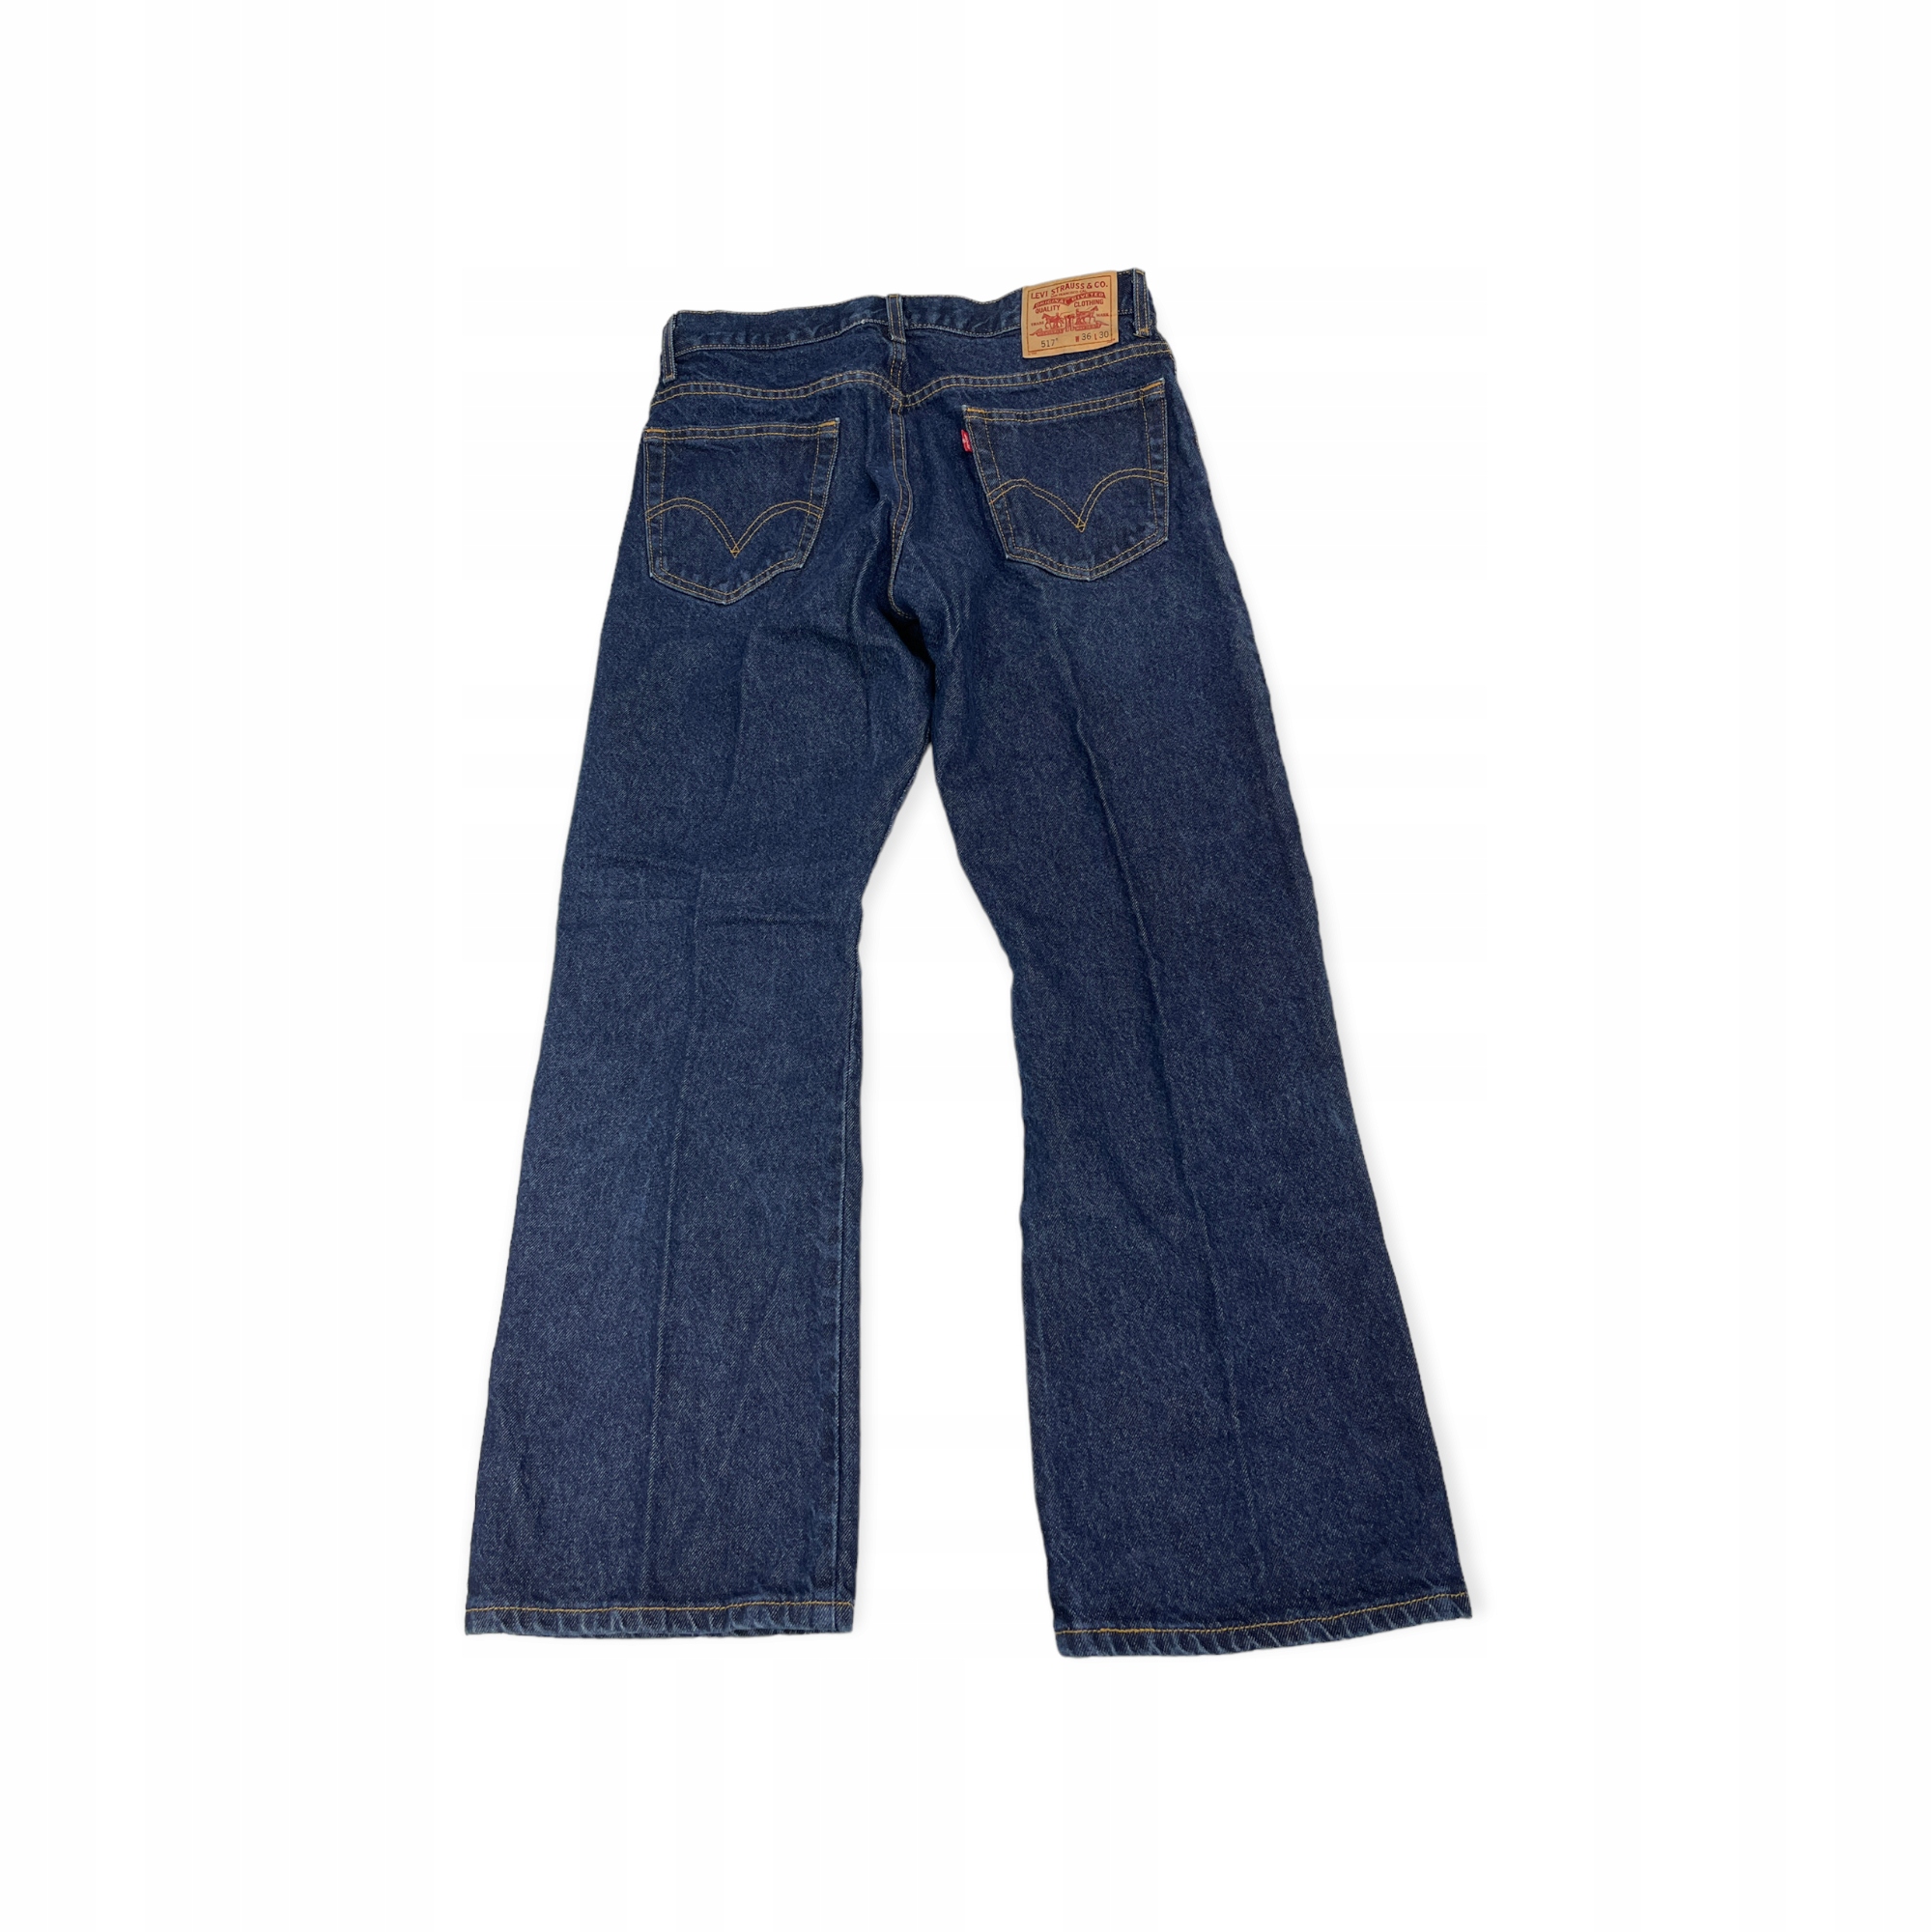 Spodnie jeansowe męskie WRANGLER 36/30 13024363224 